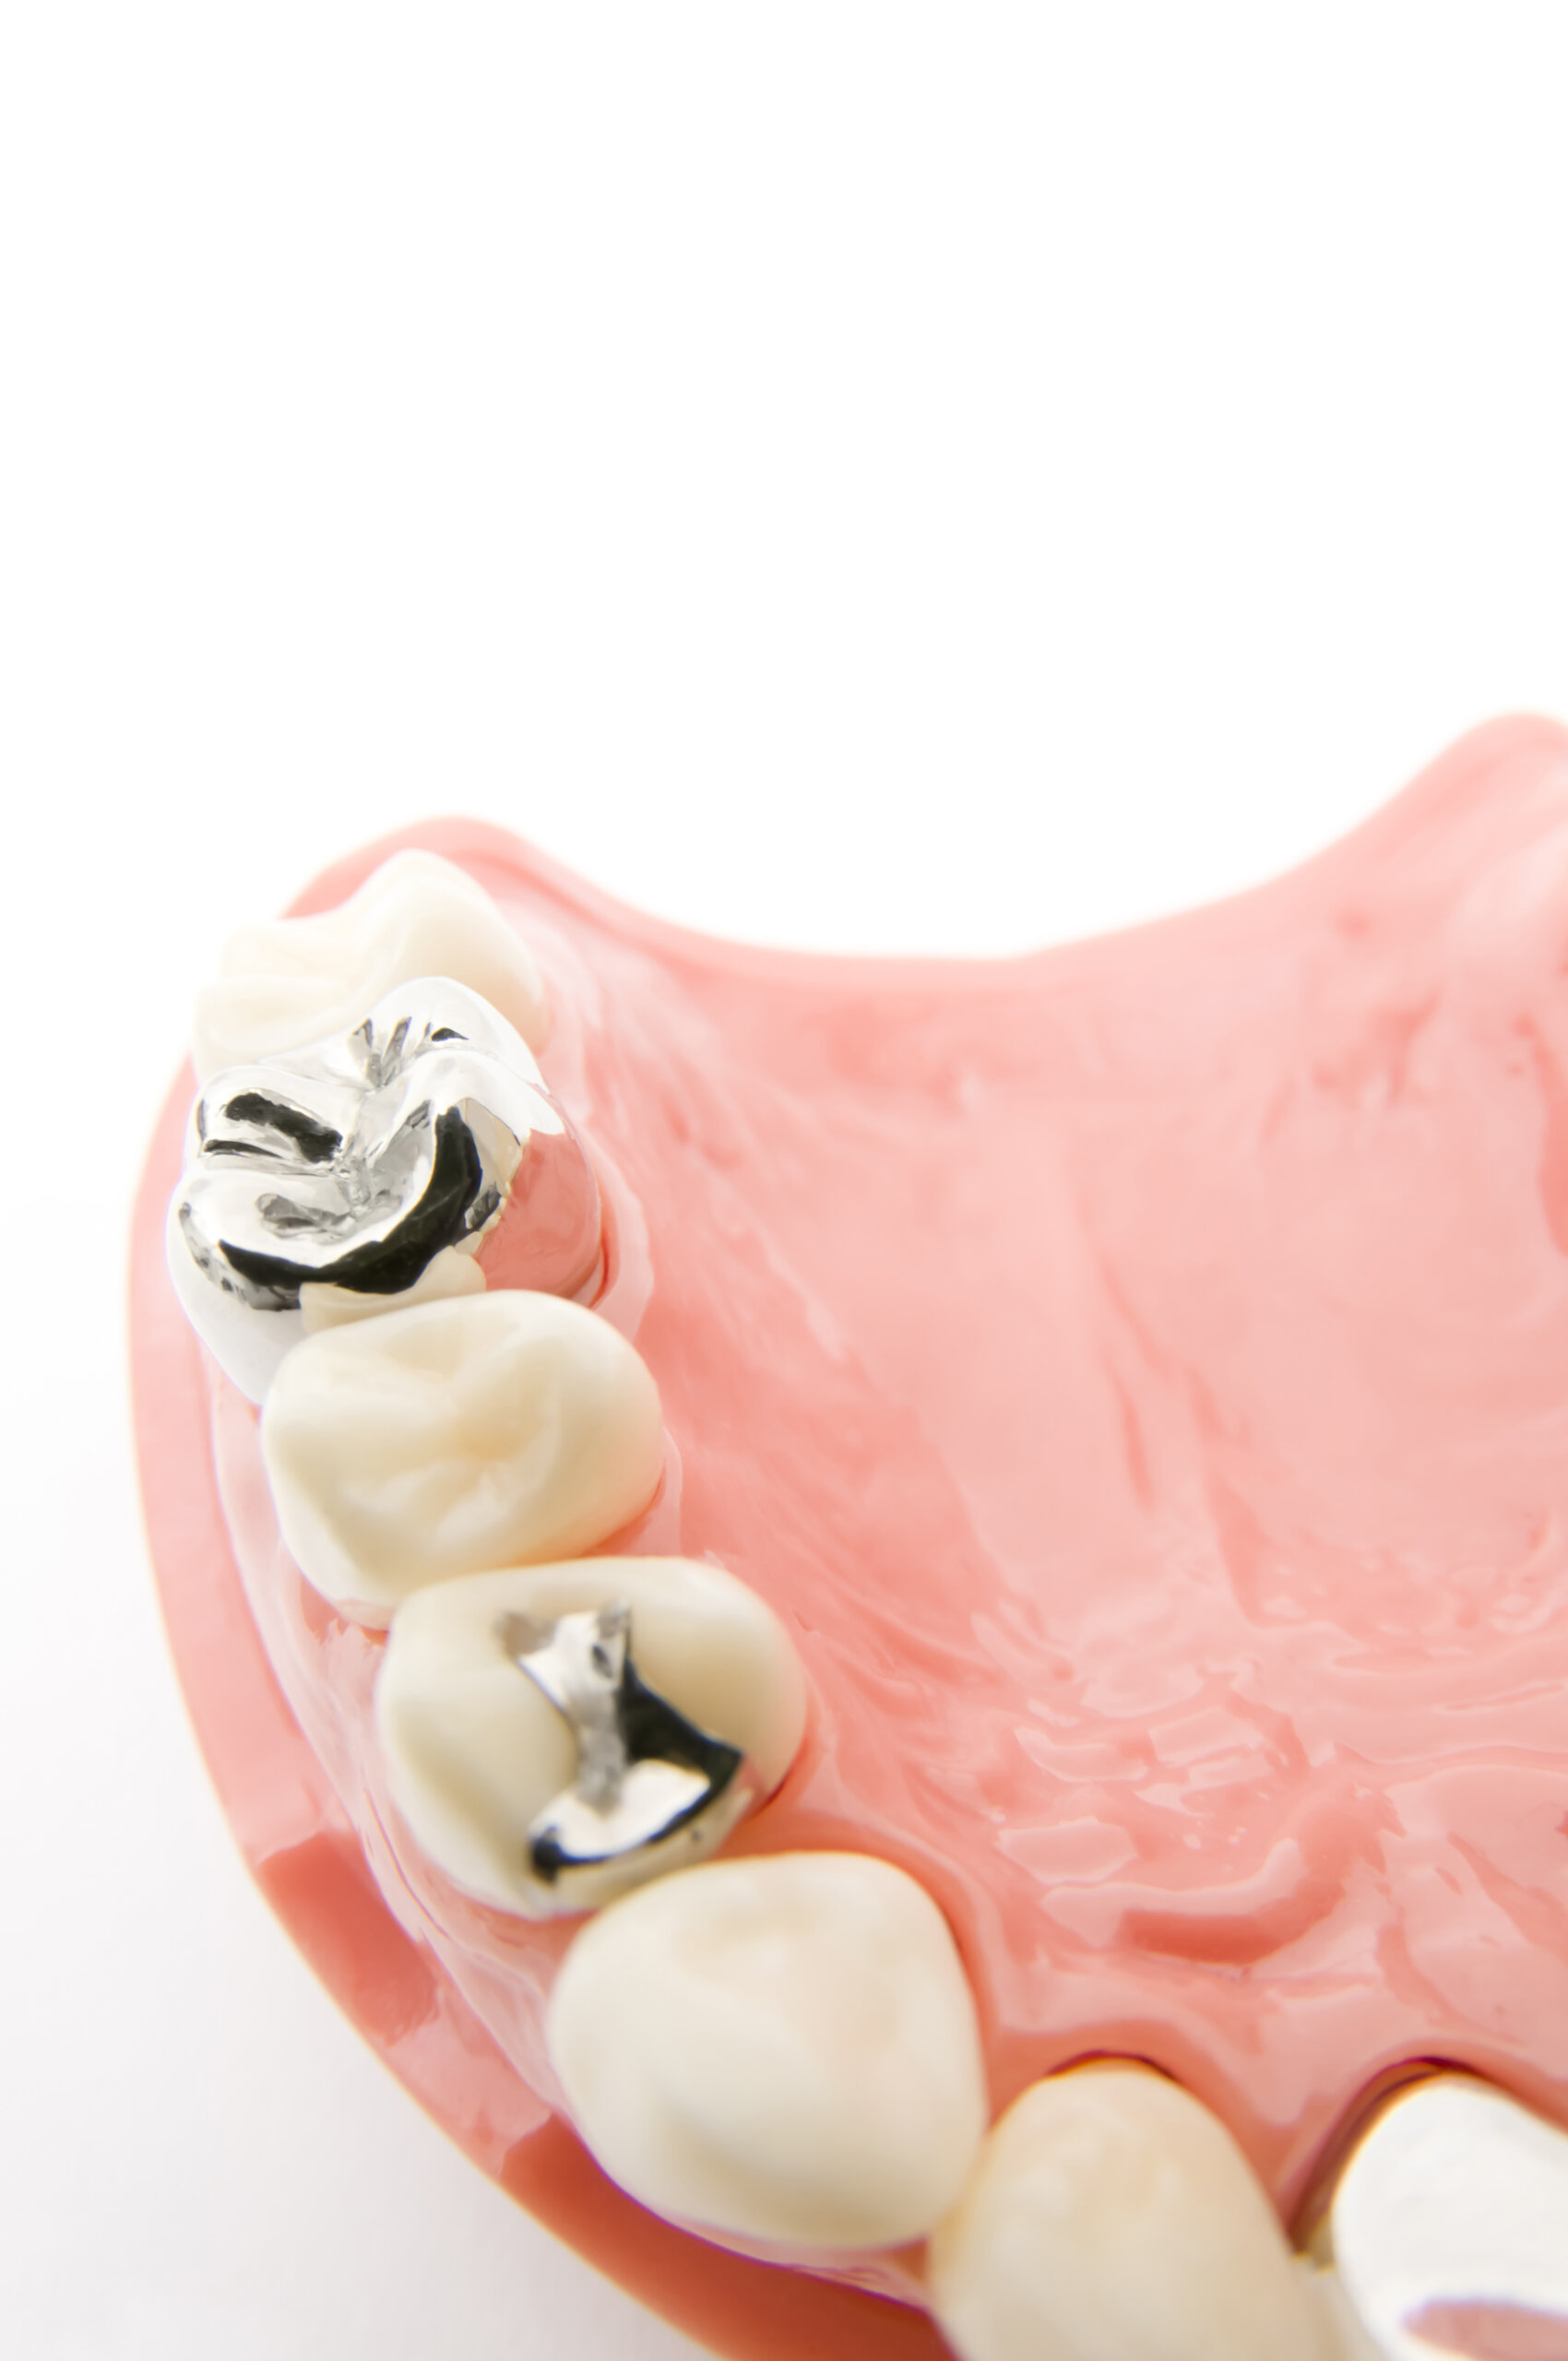 金属の歯科材料には様々なリスクがあります